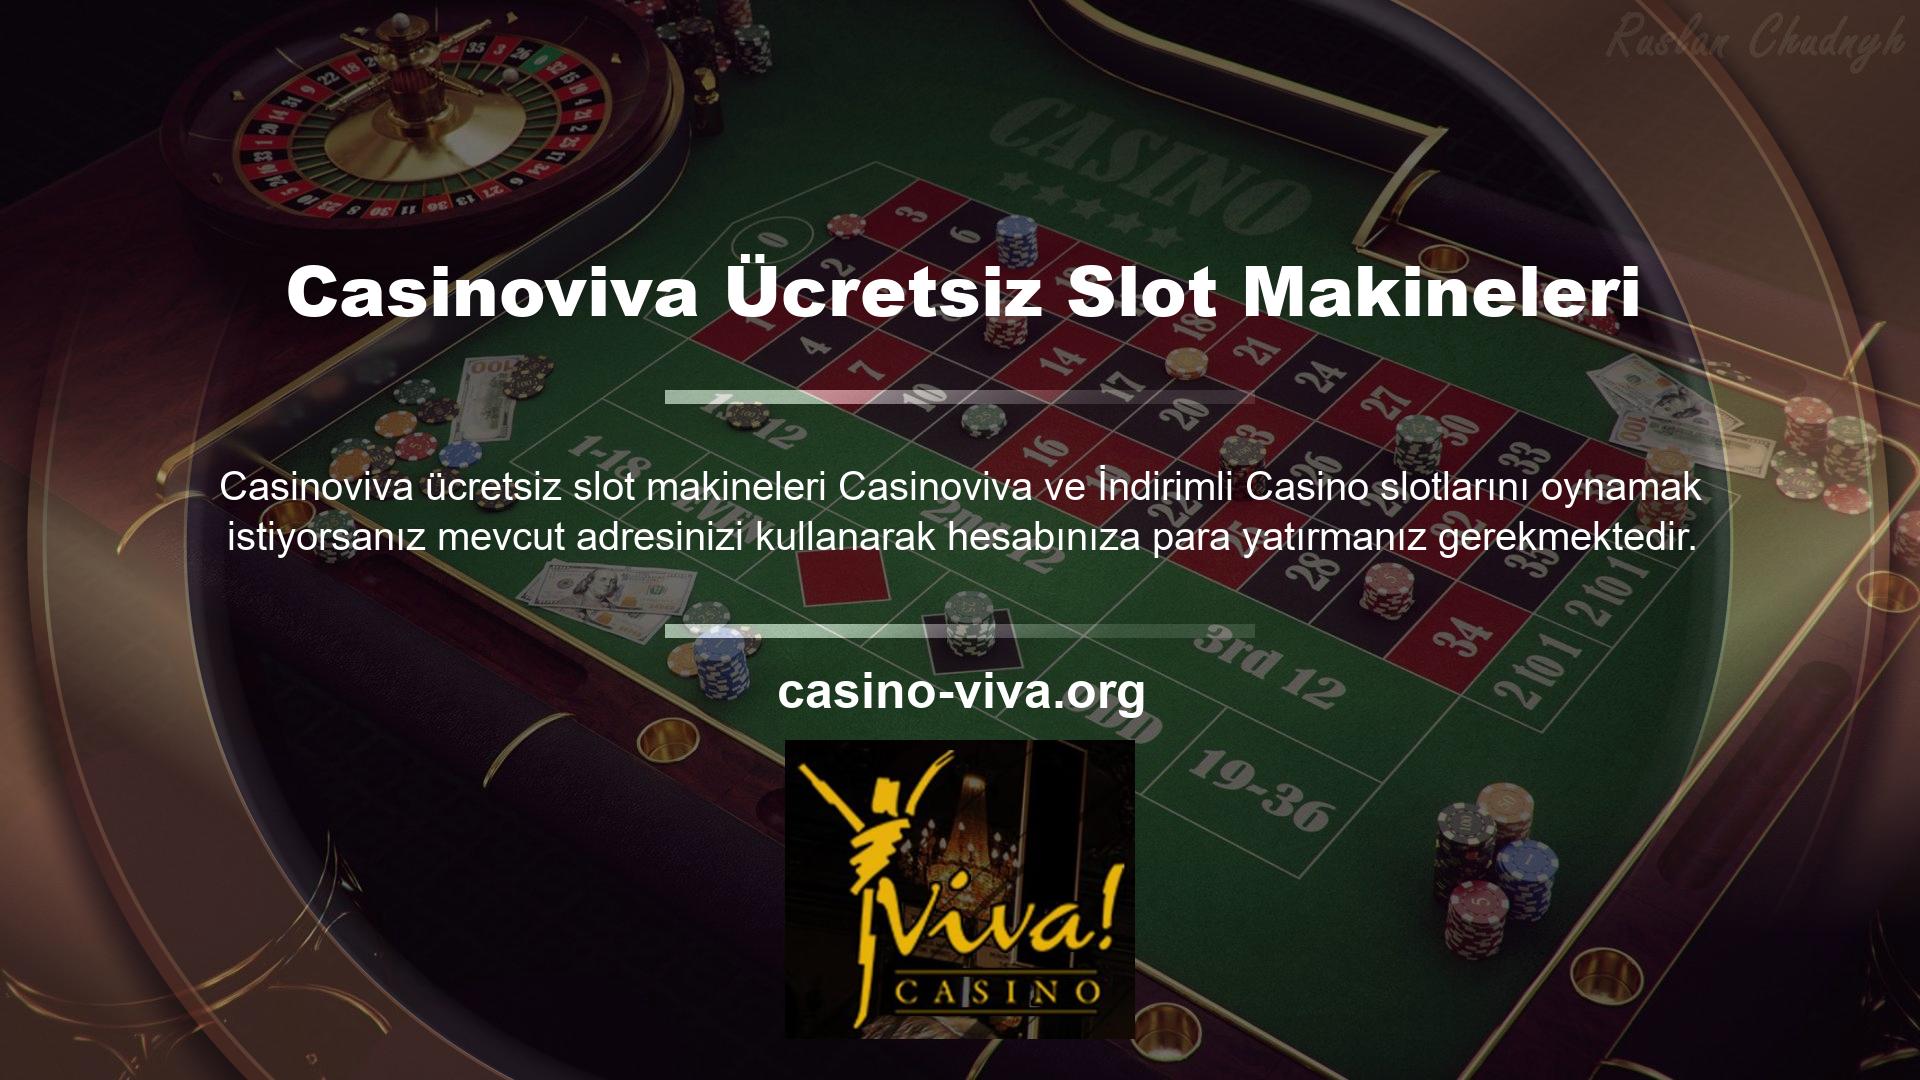 Dilerseniz mobil versiyona kredi kartı veya nakit olarak yatırım yapabilir ve dilediğiniz casino sitesinden slot makinelerini ve varyasyonlarını seçebilirsiniz